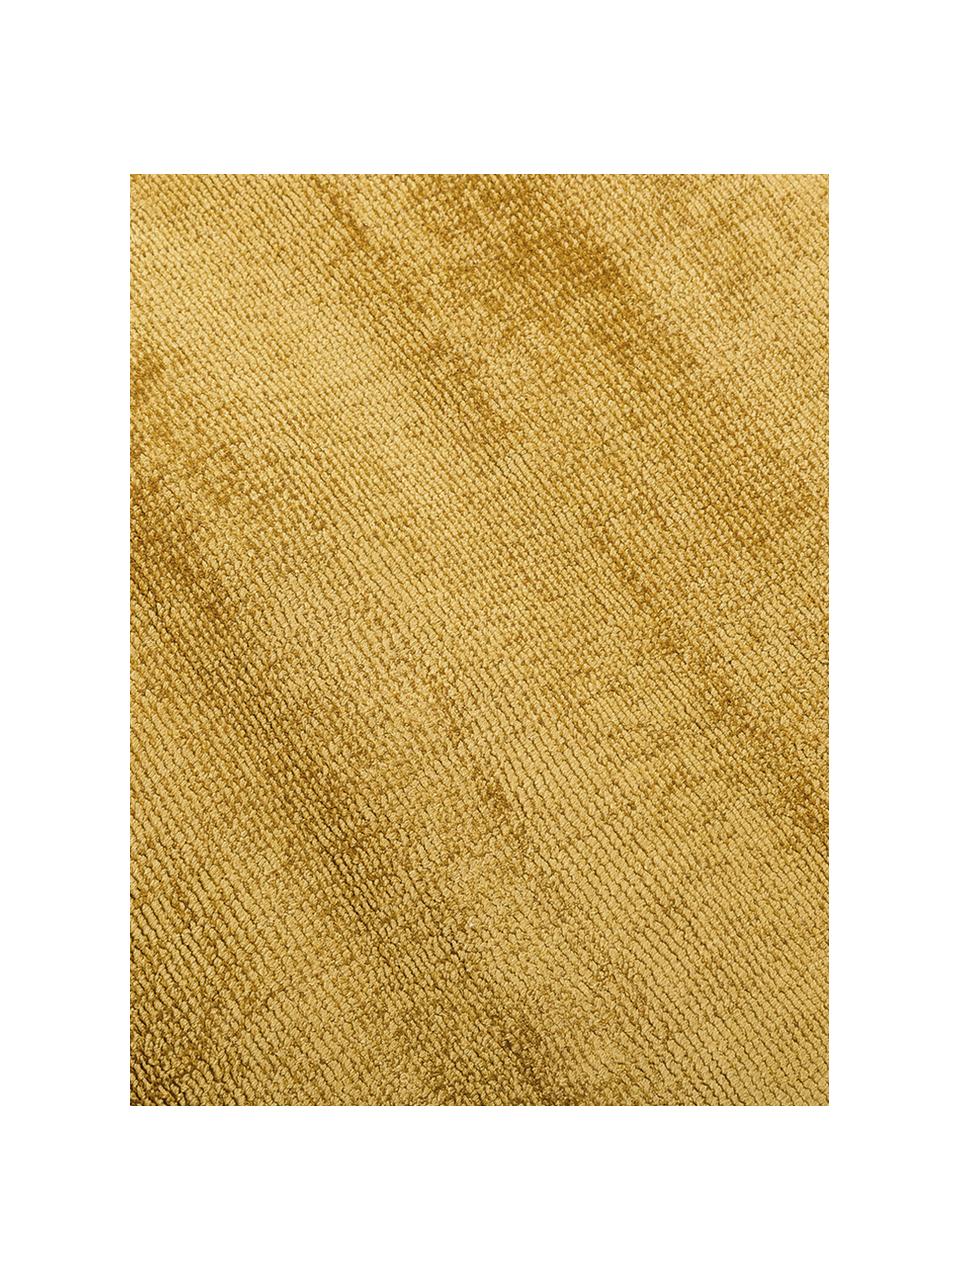 Viscose vloerkleed Jane Diamond, Bovenzijde: 100% viscose, Onderzijde: 100% katoen, Mosterdgeel, 120 x 180 cm